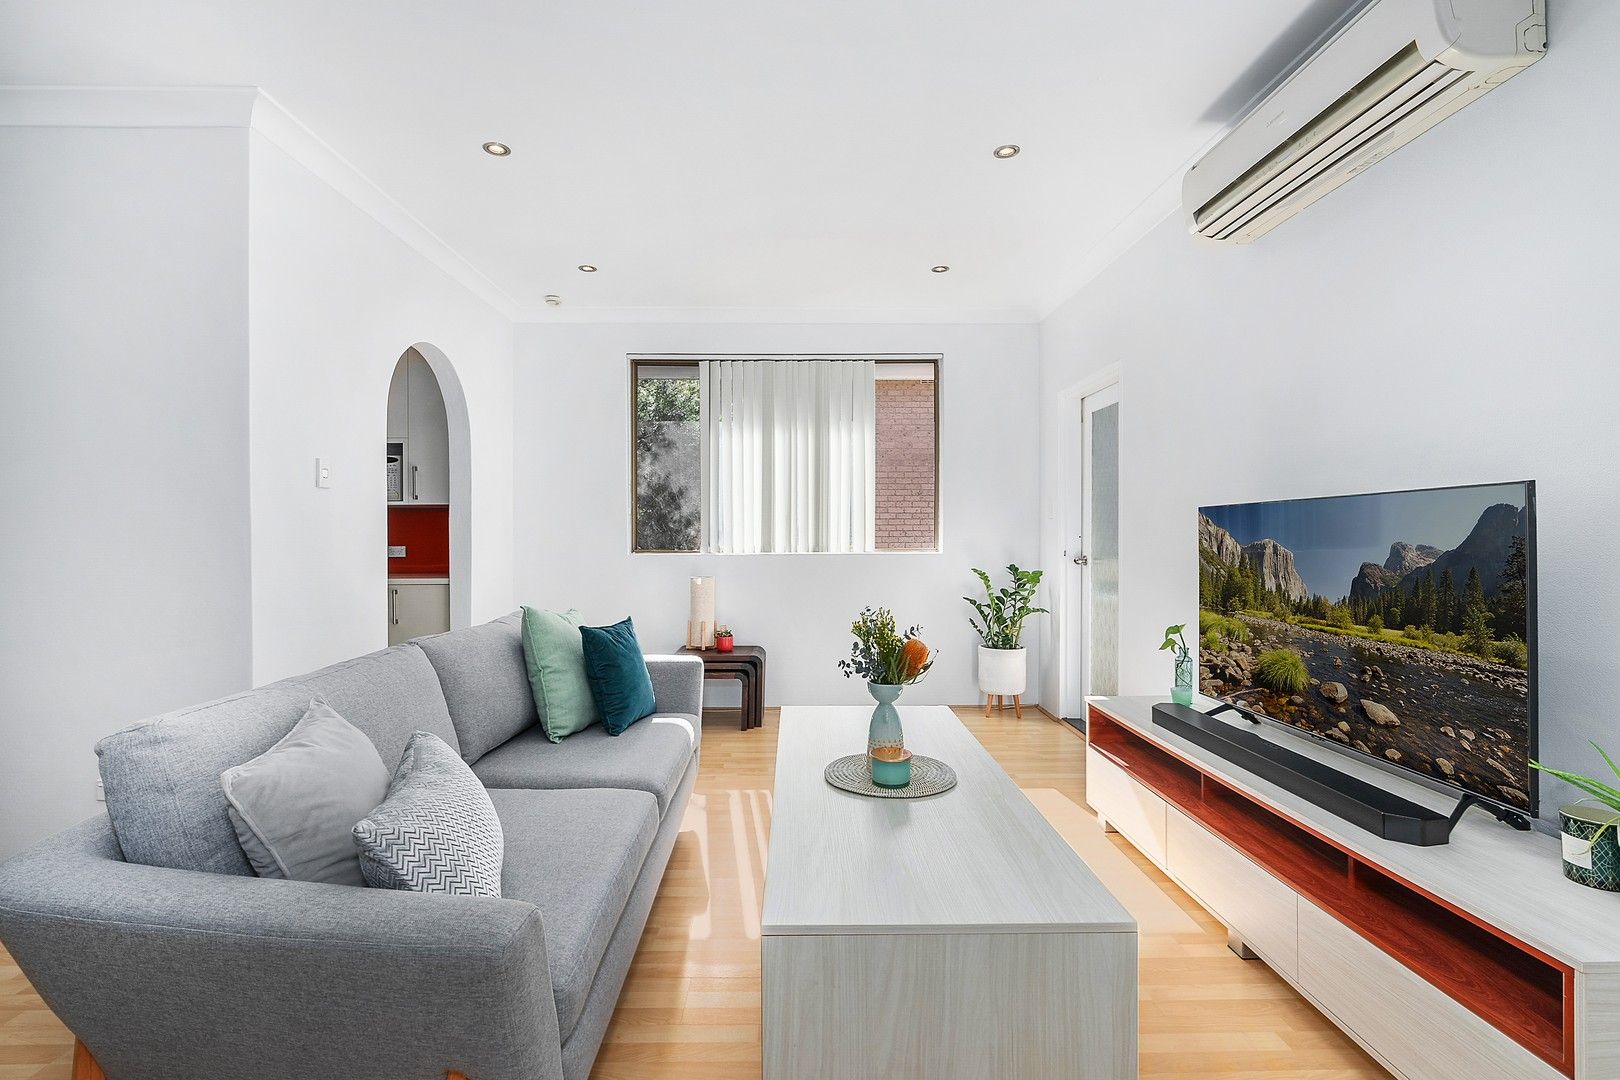 2 bedrooms Apartment / Unit / Flat in 8/188 Queen Victoria Street BEXLEY NSW, 2207